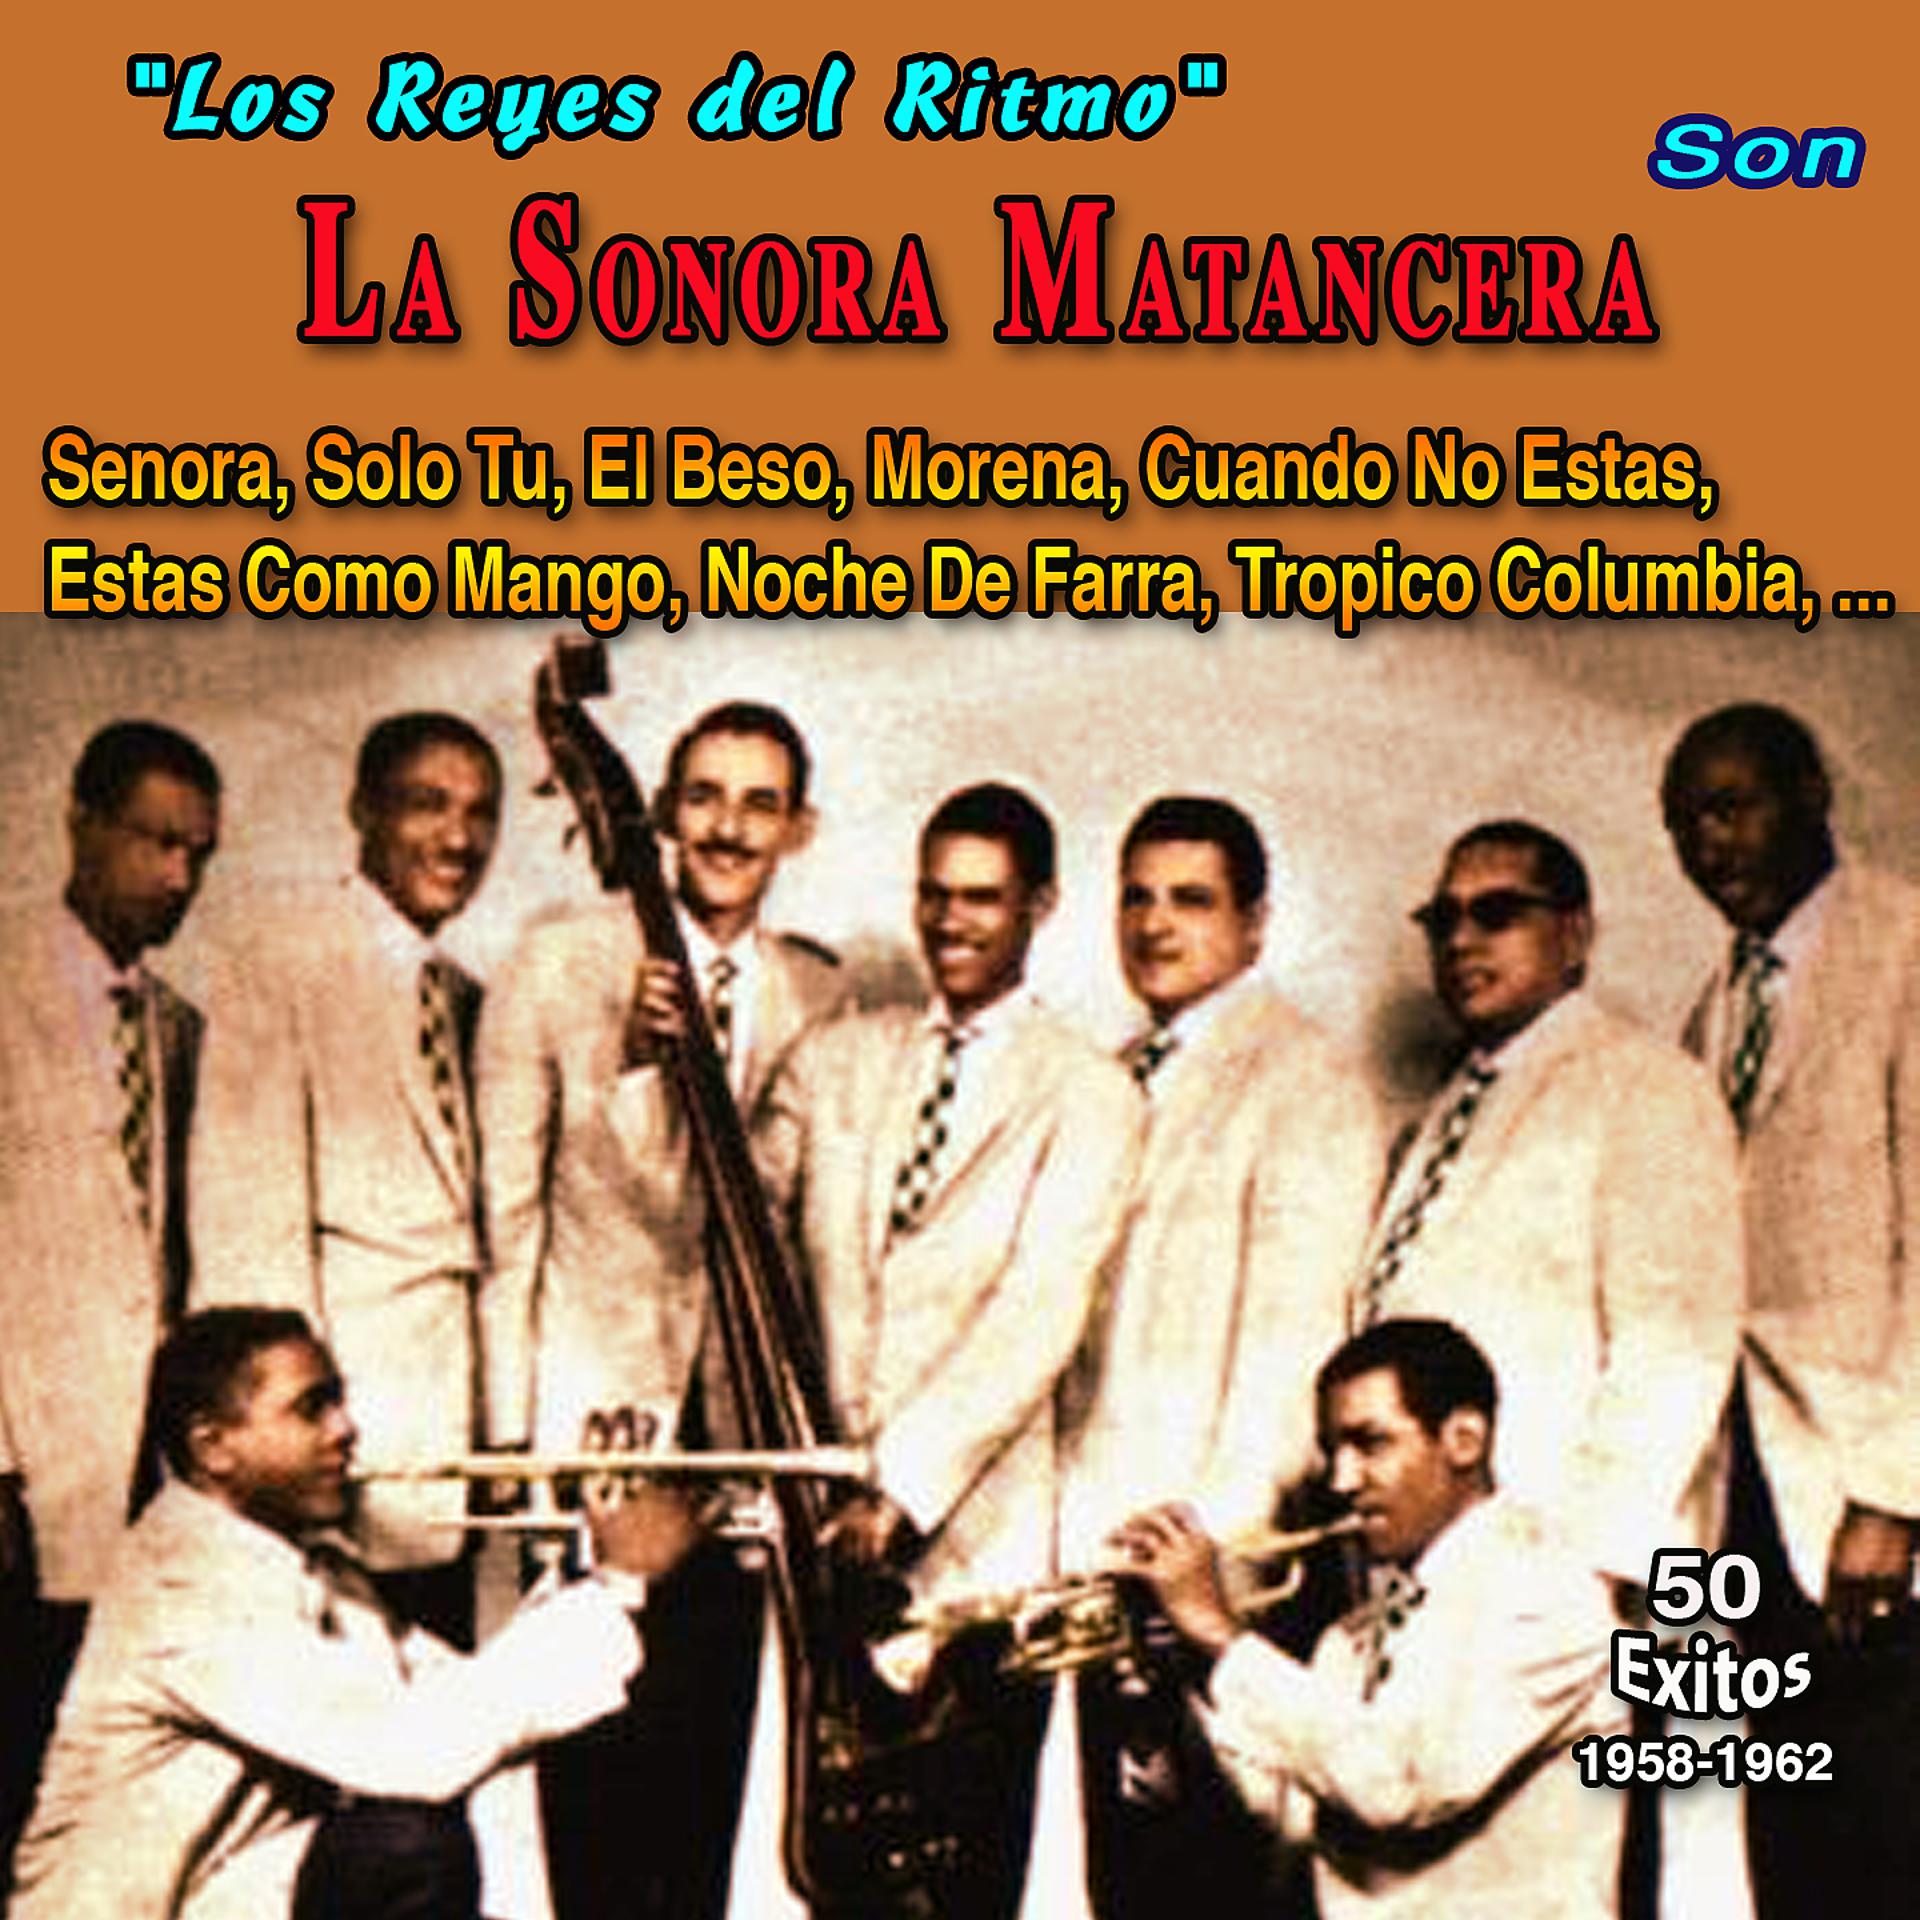 Постер альбома "Los Reyes del Ritmo" - La Sonora Matancera - Cuando No Estas